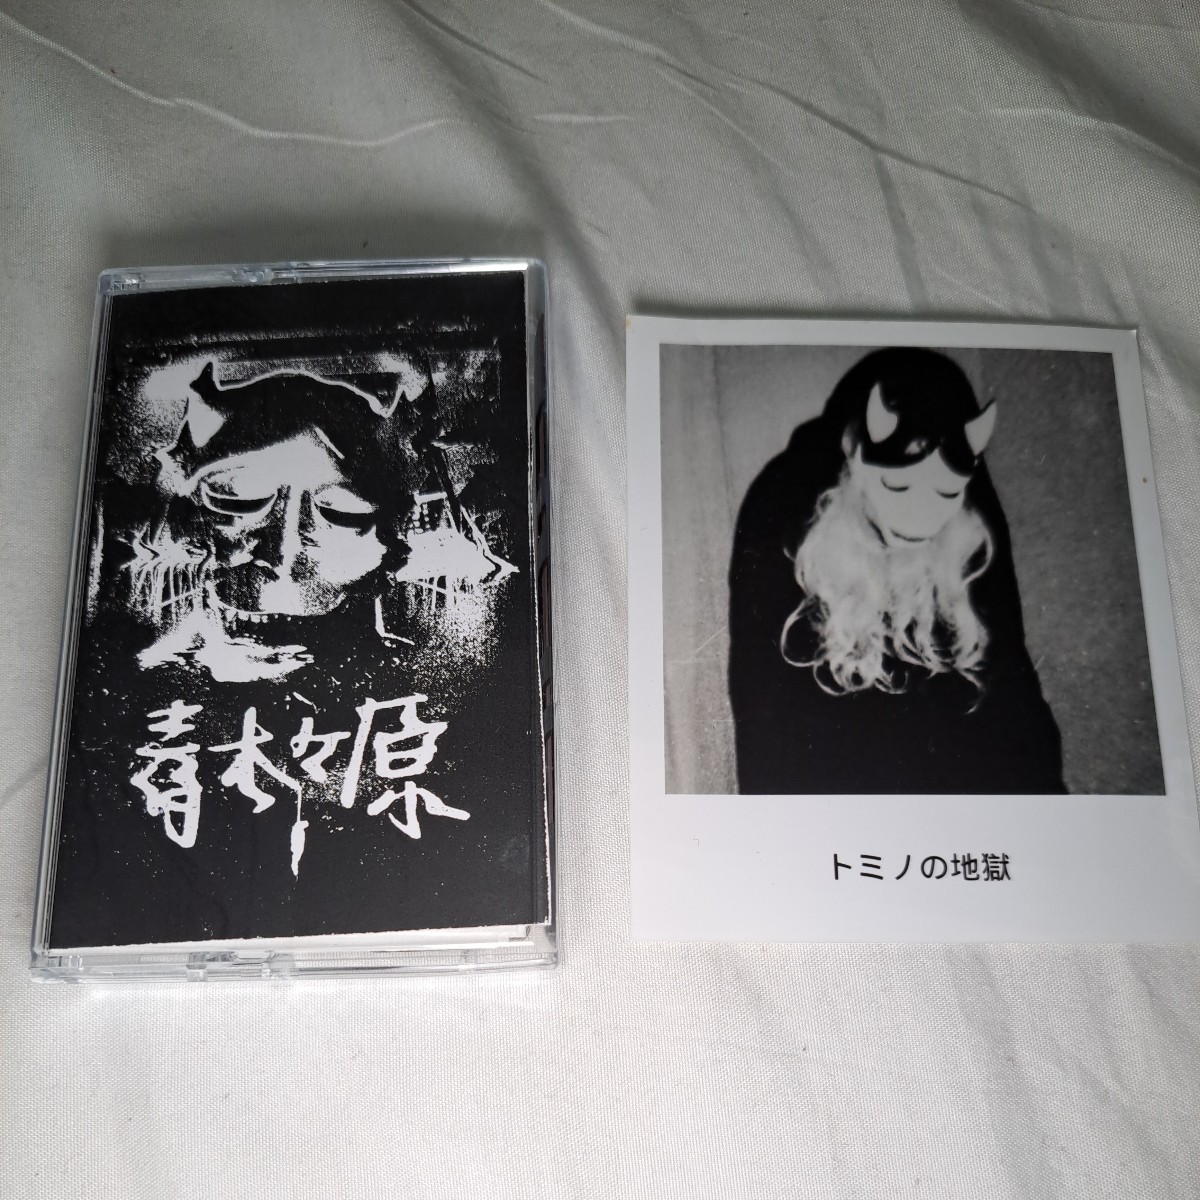 【ダンジョンシンセ】 Aokigahara ‐ トミノの地獄 Tomino's Hell カセットテープ ブラックメタル アンビエント_画像1